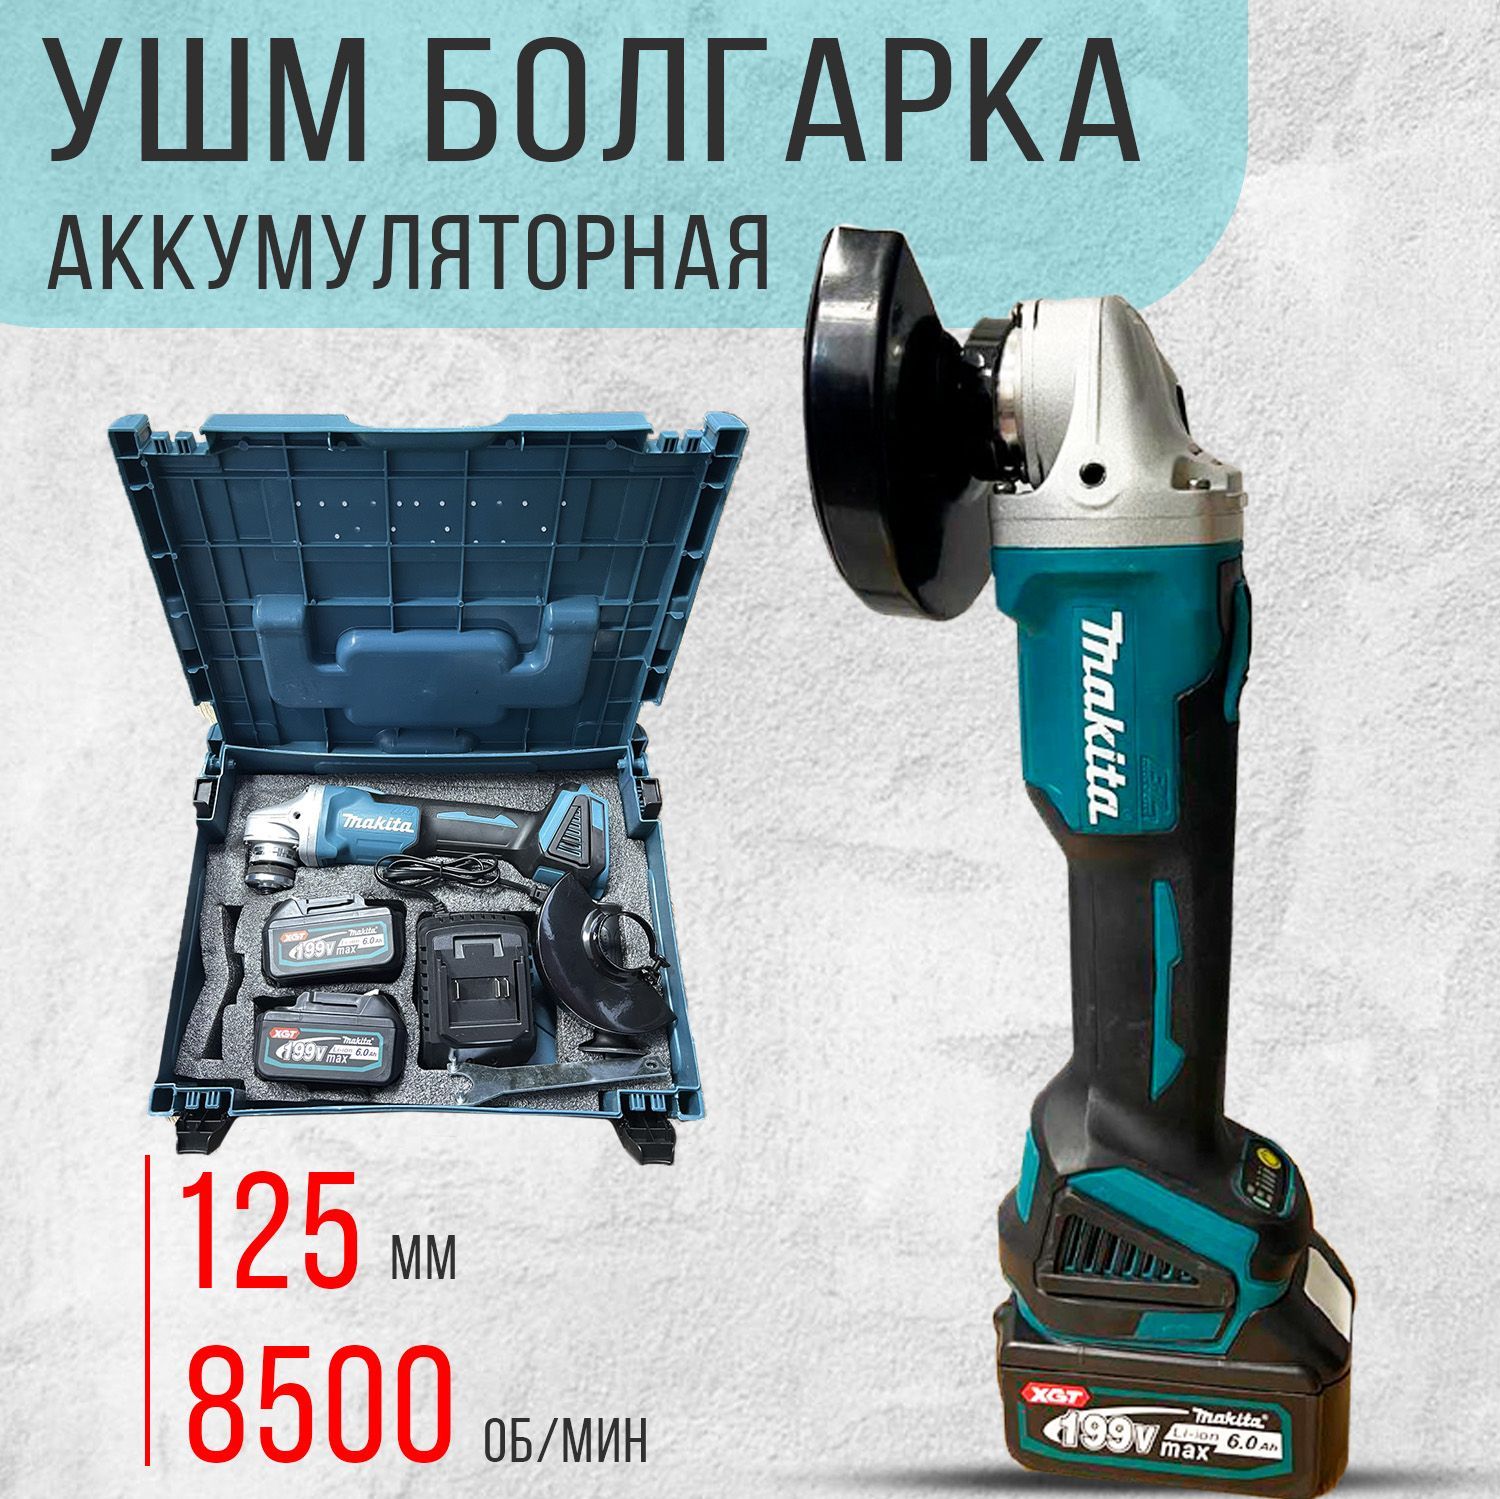 Кейс ушм 125 мм. Makita 824736-5. Инструменты в чемодане болгарки.